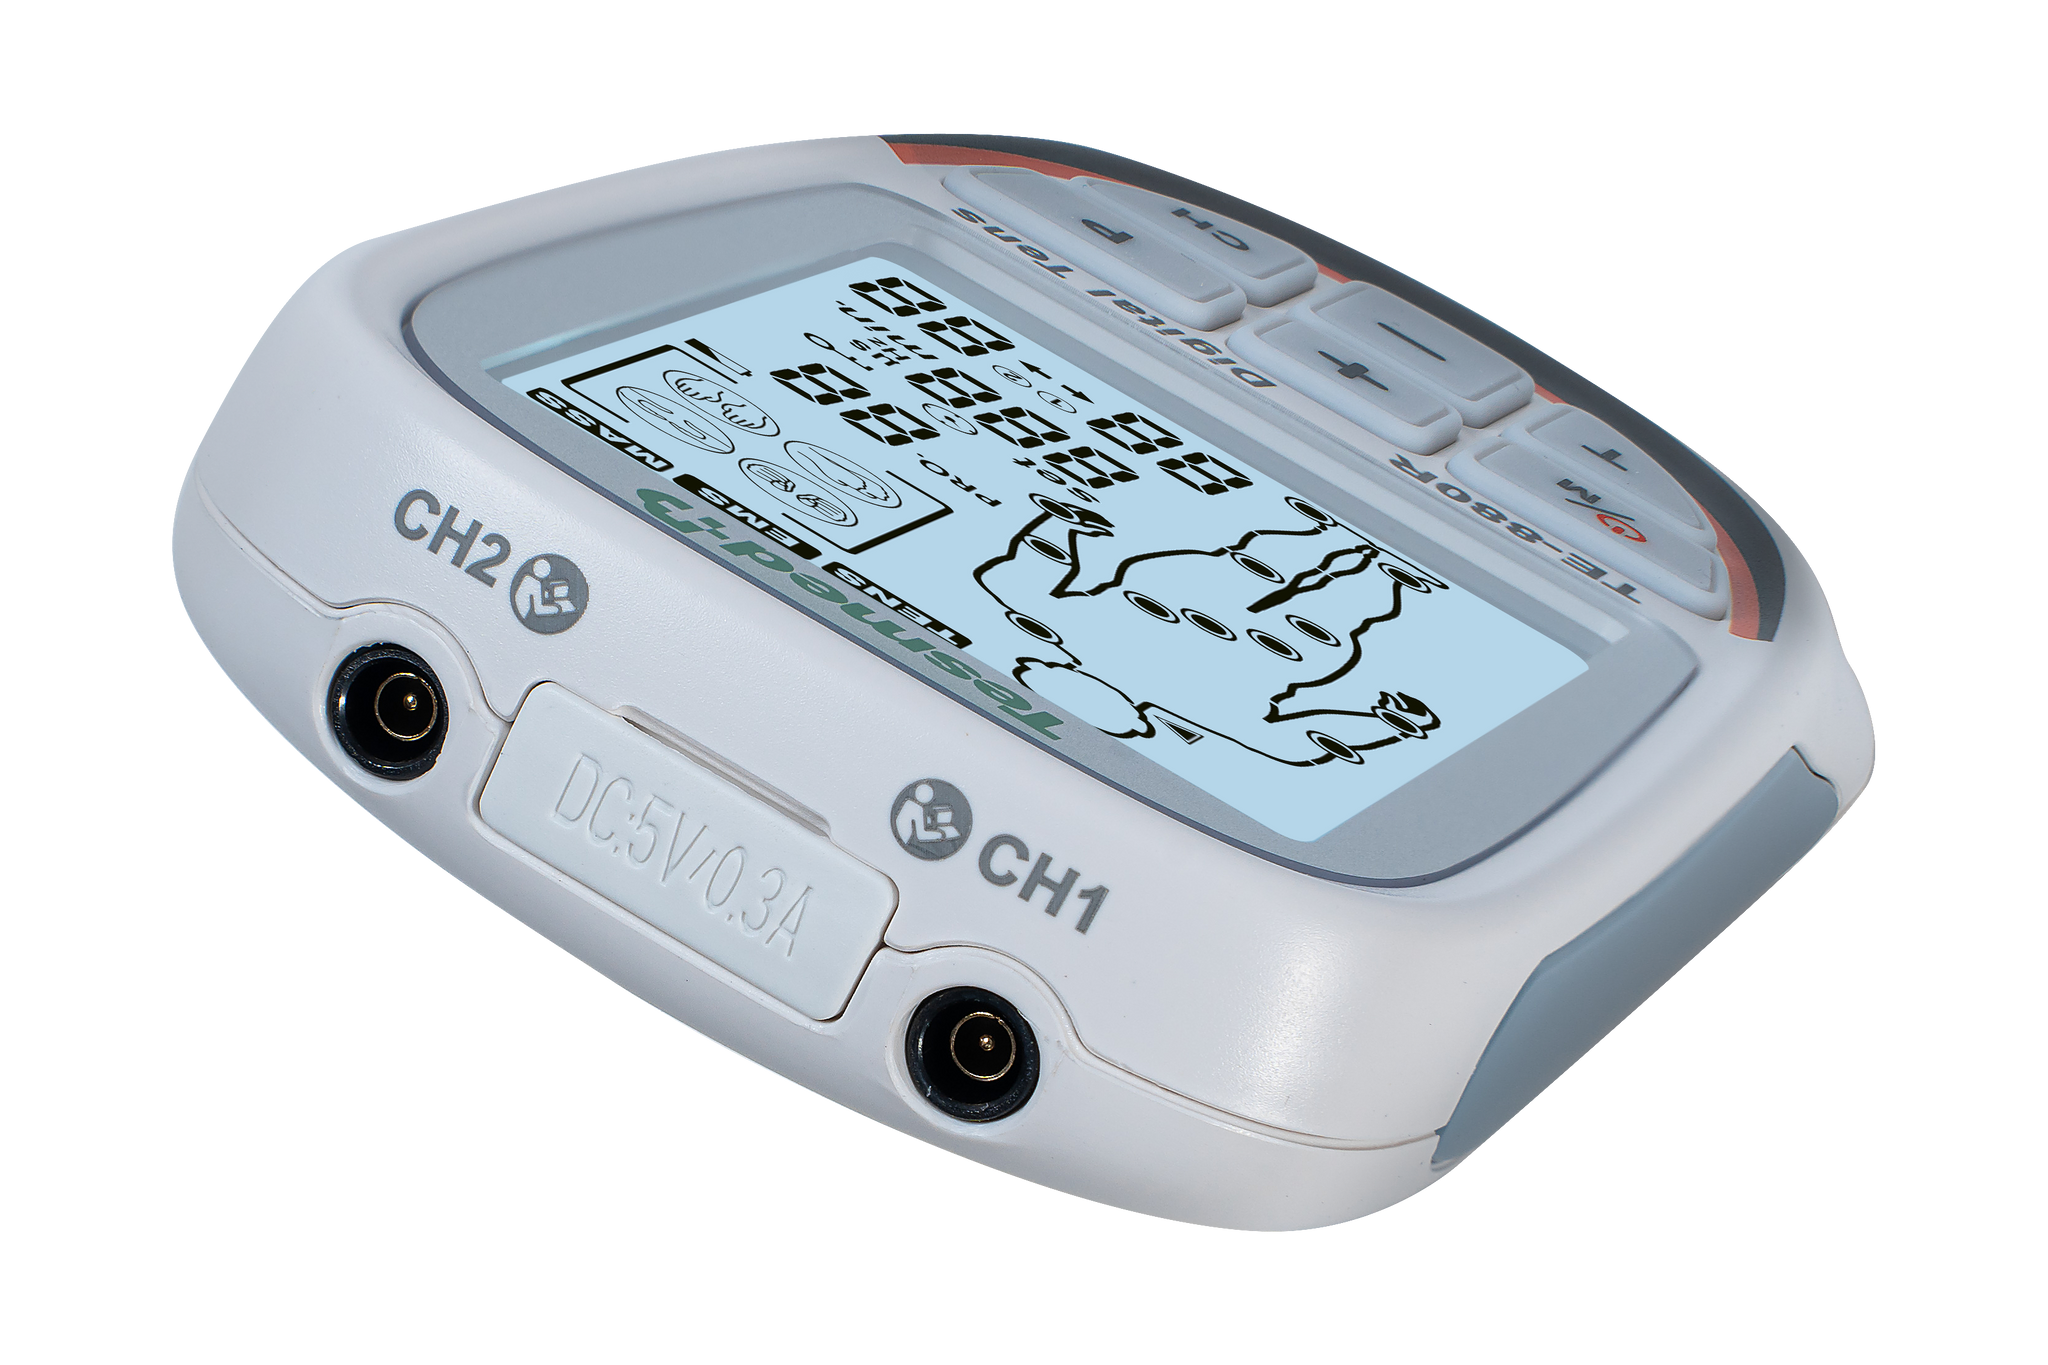 TESMED TE-880R Plus Wiederaufladbarer Muskel-Elektrostimulator, EMS, TENS, Massage: 73 Programme, davon 2 anpassbar – Funktioniert mit 8 Elektroden